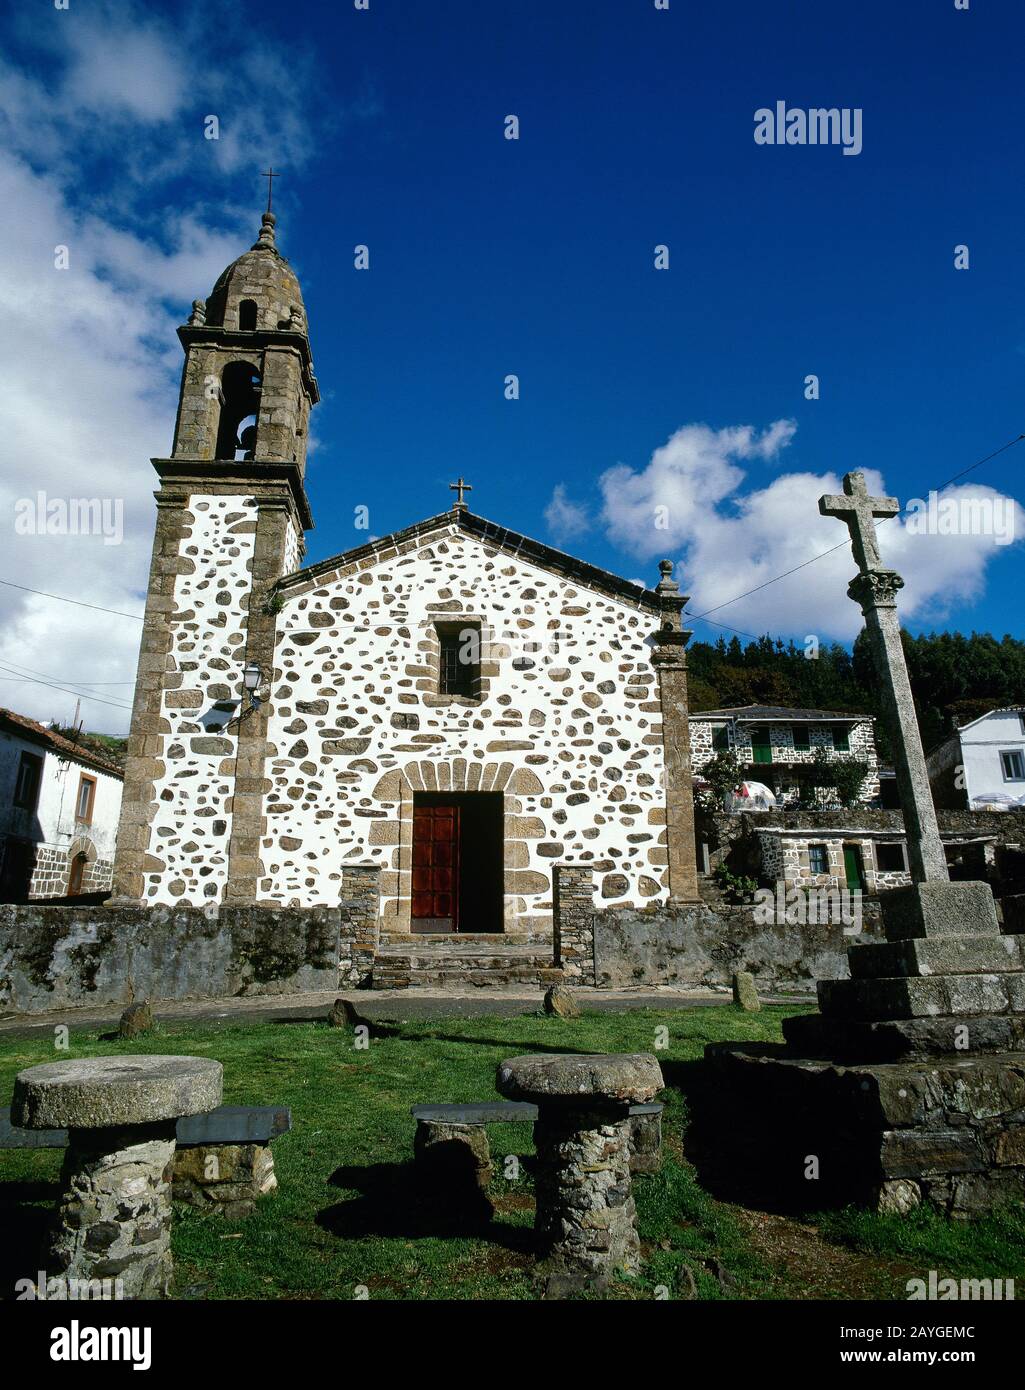 Spagna, Galizia, Provincia La Coruña. Chiesa di San Andres de Teixido. Vista sulla facciata. Fu costruito durante i secoli 16th e 18th. Famoso luogo di pellegrinaggio della parte più settentrionale della Spagna. Foto Stock